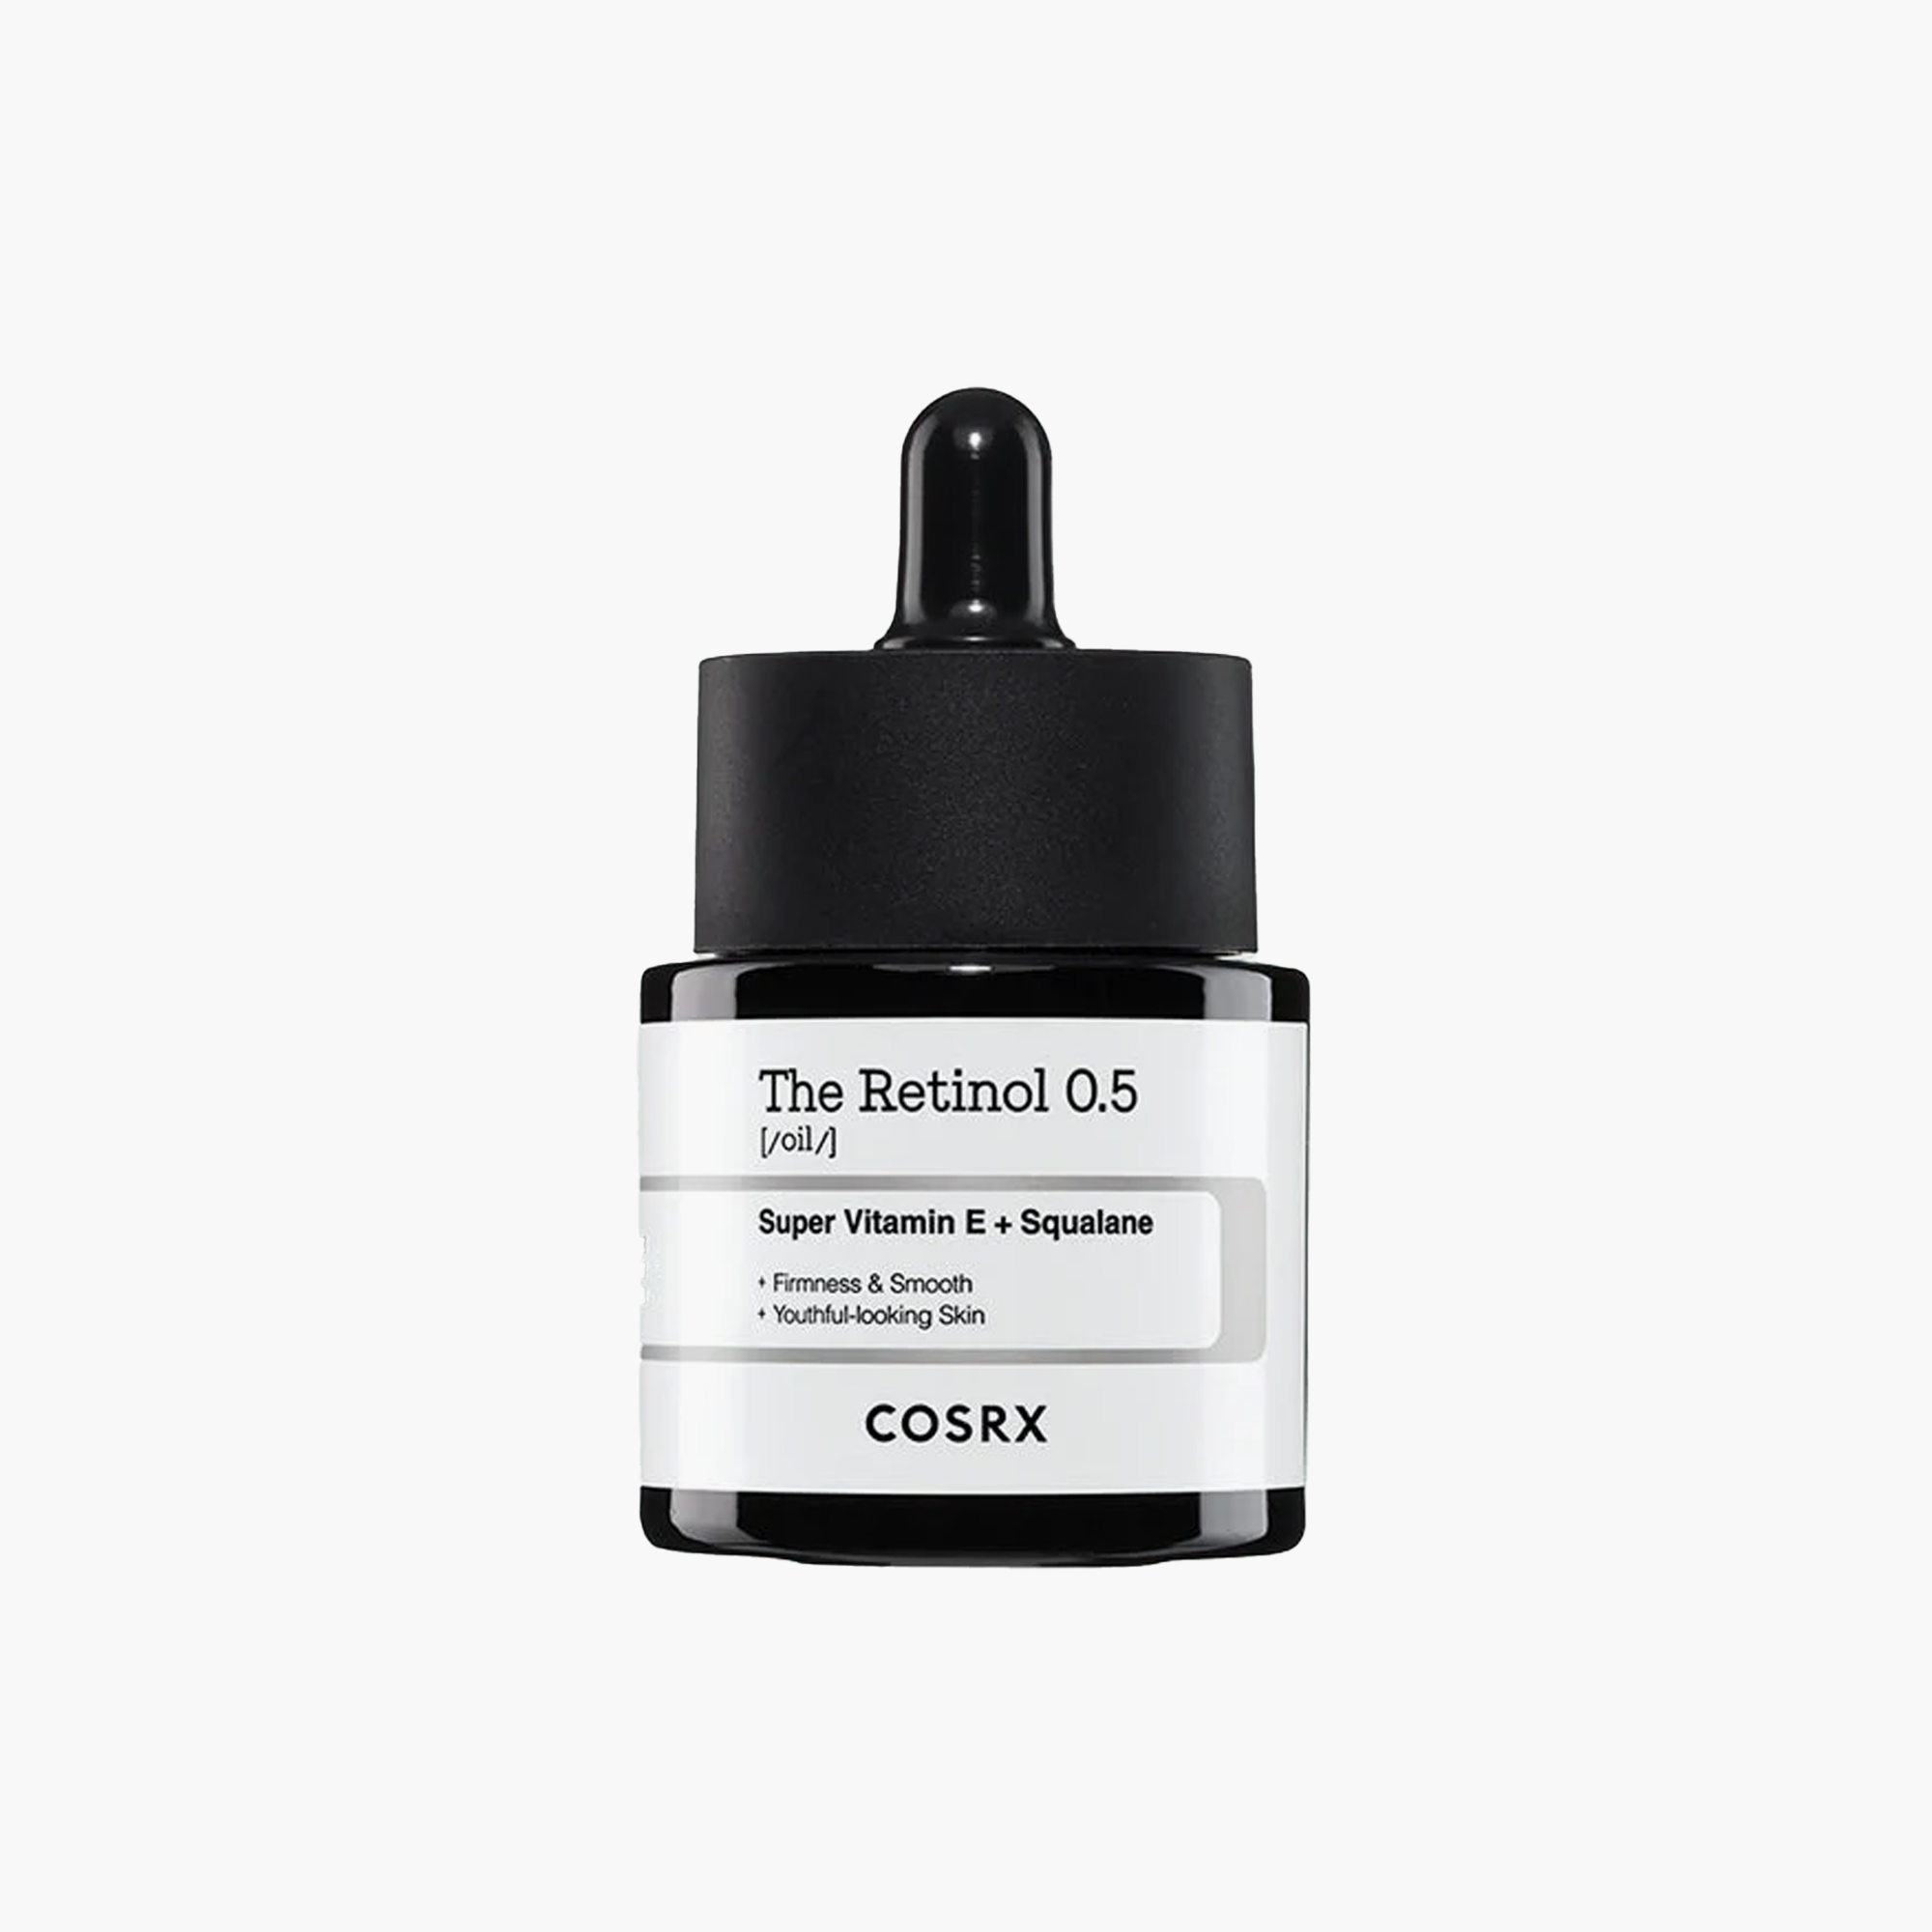 Buy COSRX The Retinol 0.5 Oil Super Vitamin E + Squalane 20ml Online